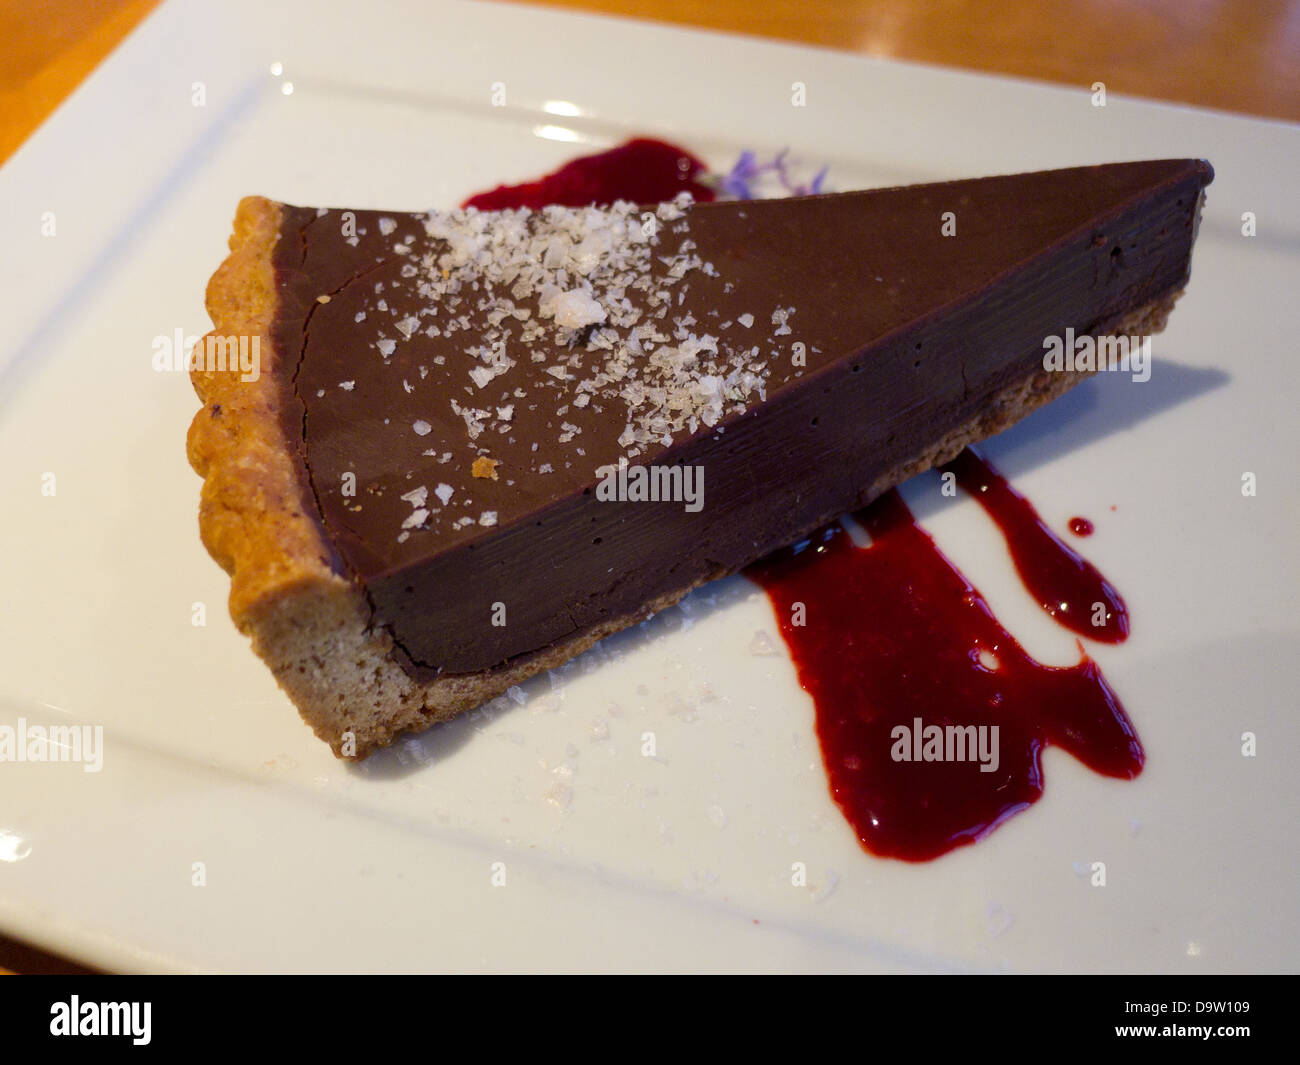 Chocolate pie. Stock Photo